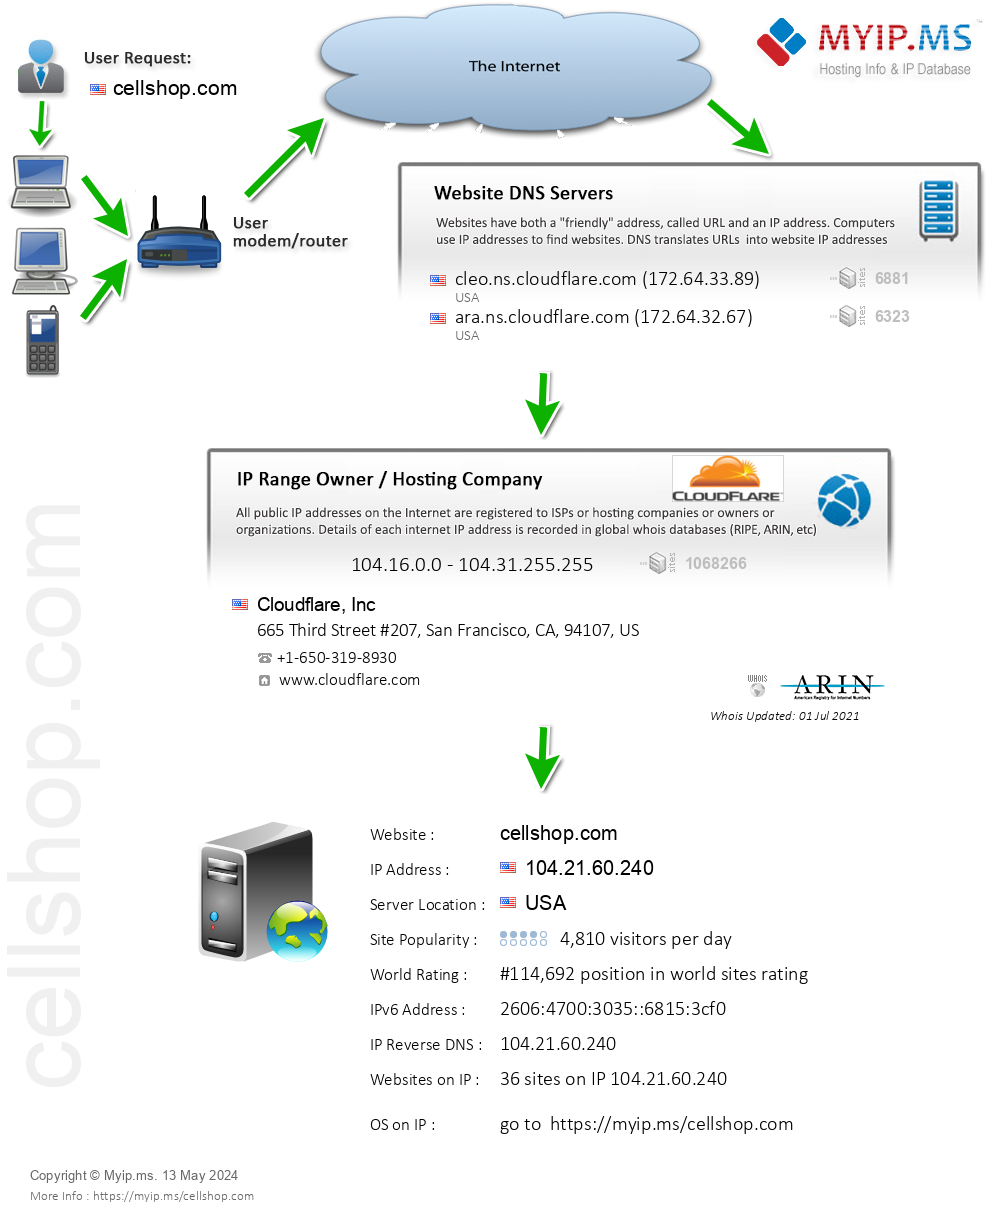 Cellshop.com - Website Hosting Visual IP Diagram